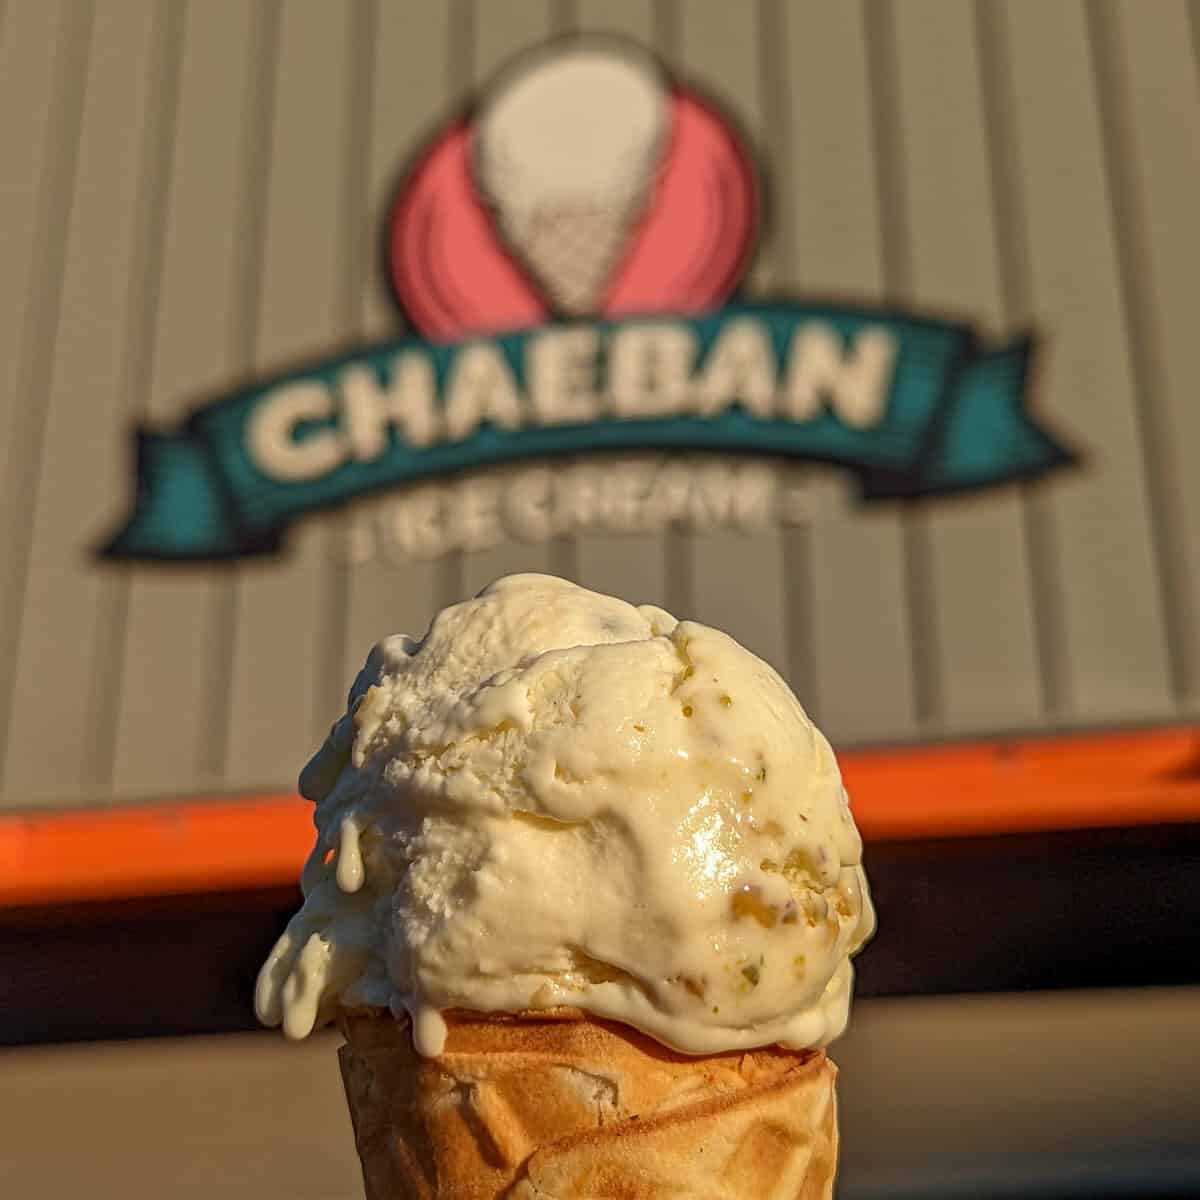 Chaeban Ice Cream